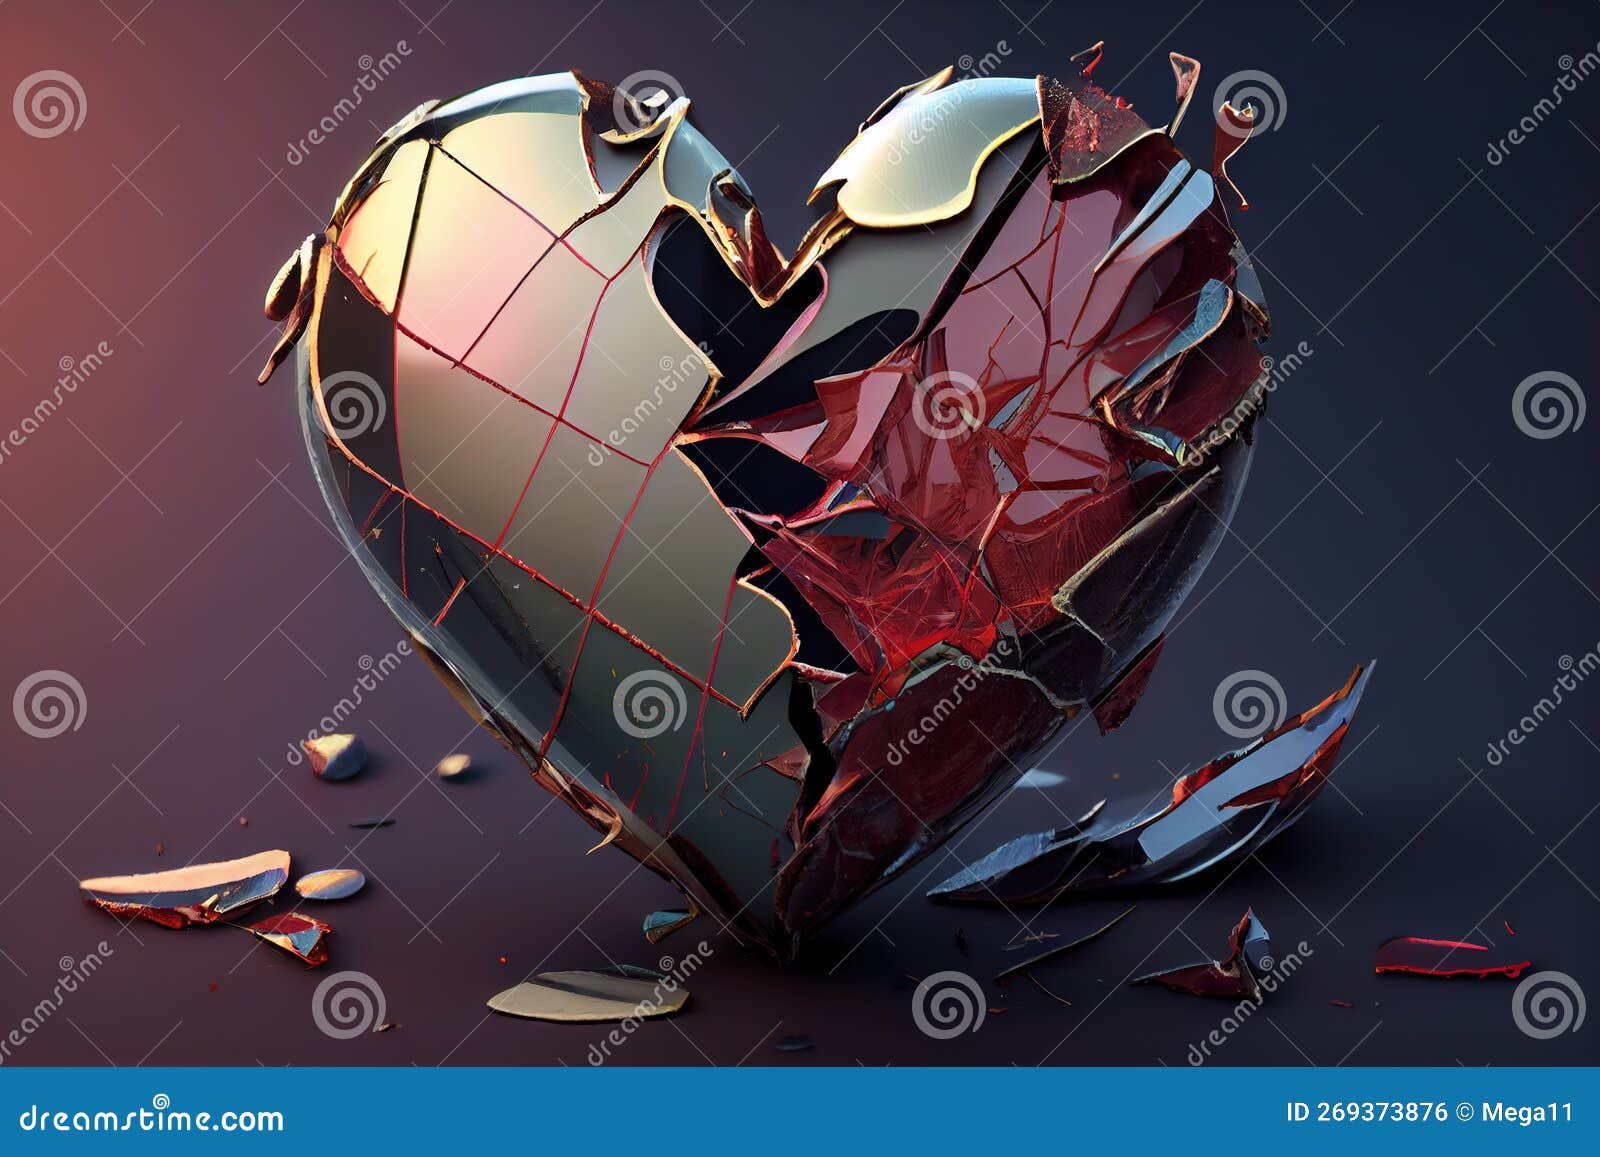 Love Broken - red heart Wallpaper Download | MobCup